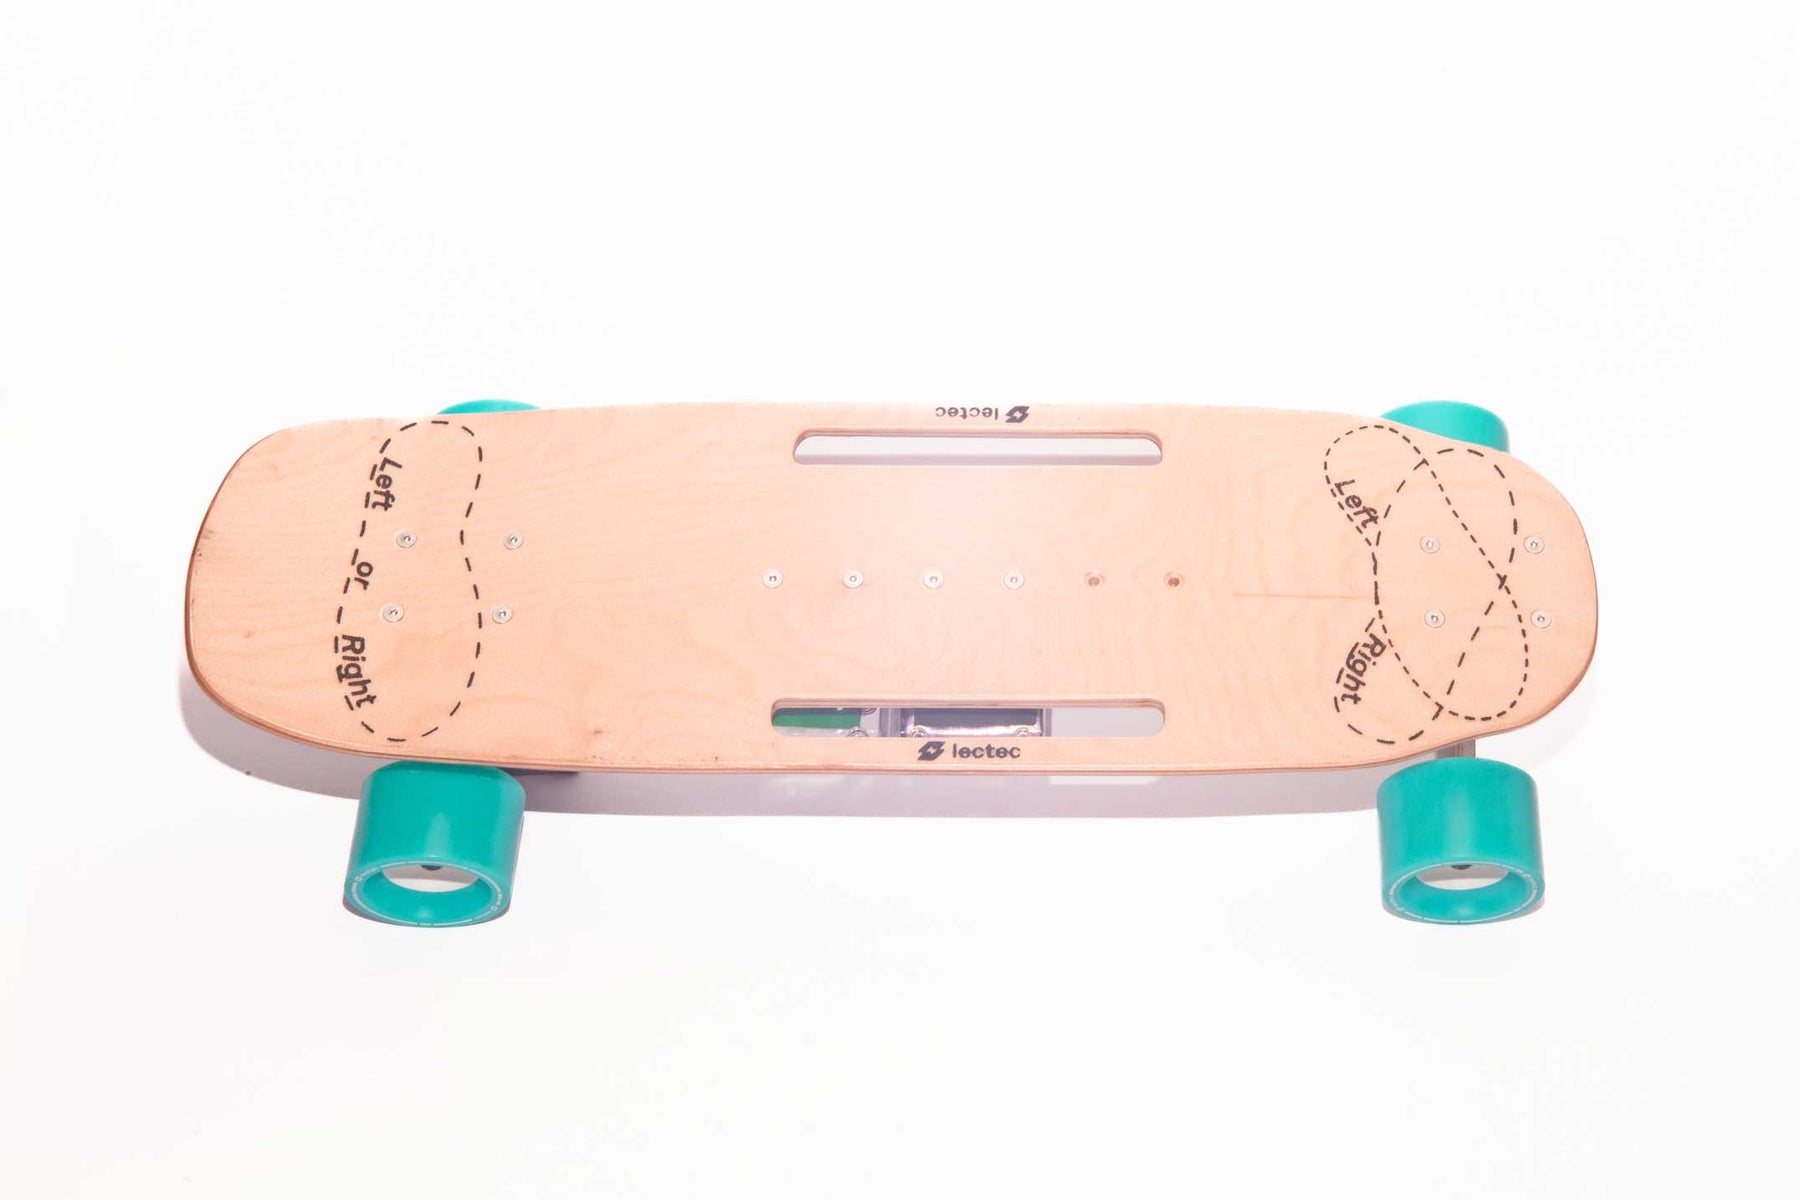 Electric Skateboard Kit